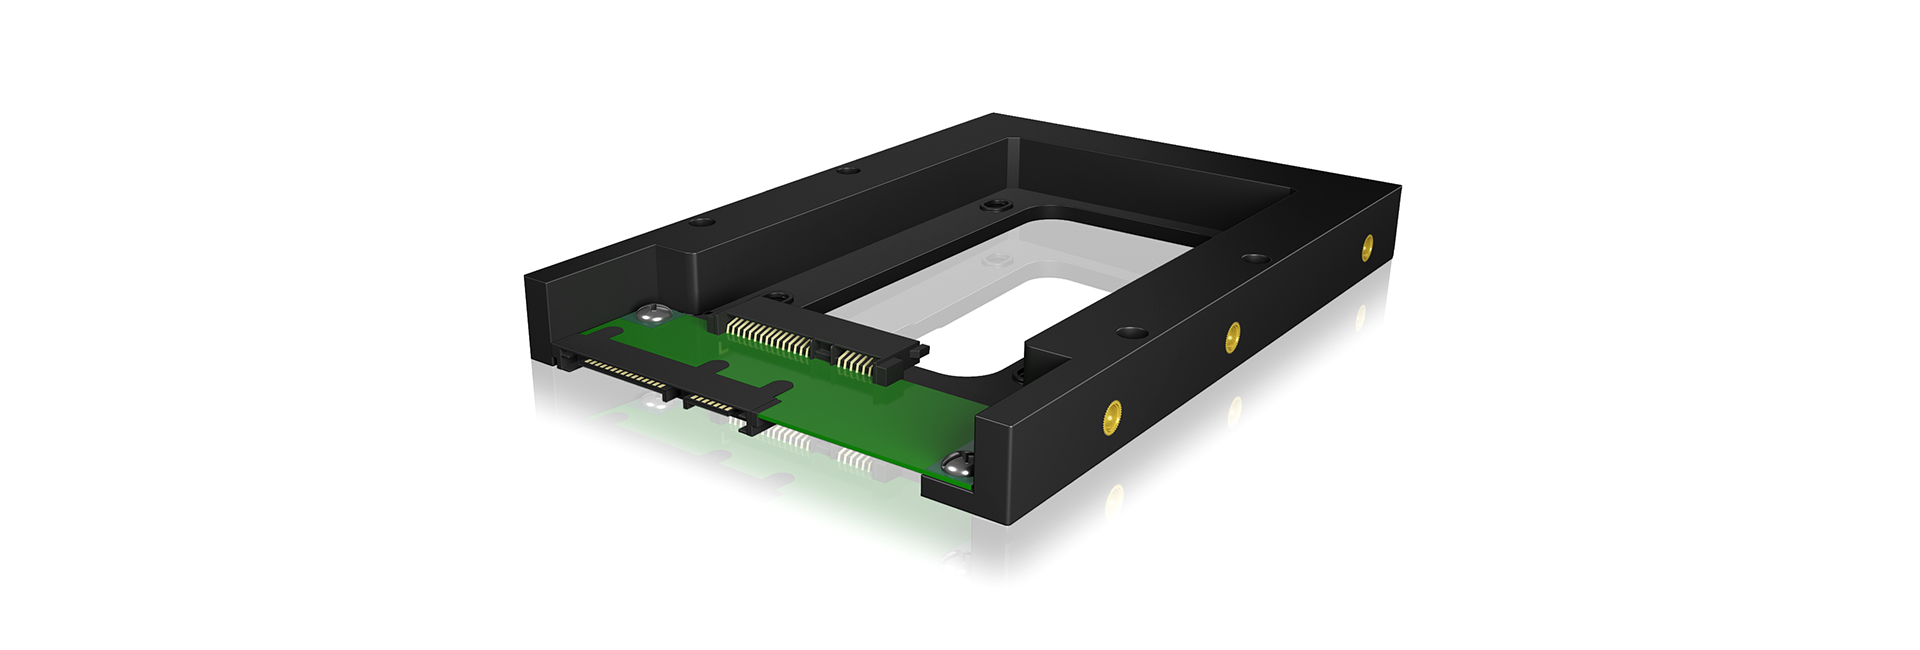 Einbaurahmen IcyBox HDD/SSD Konverter 2,5 -> 3,5 retail